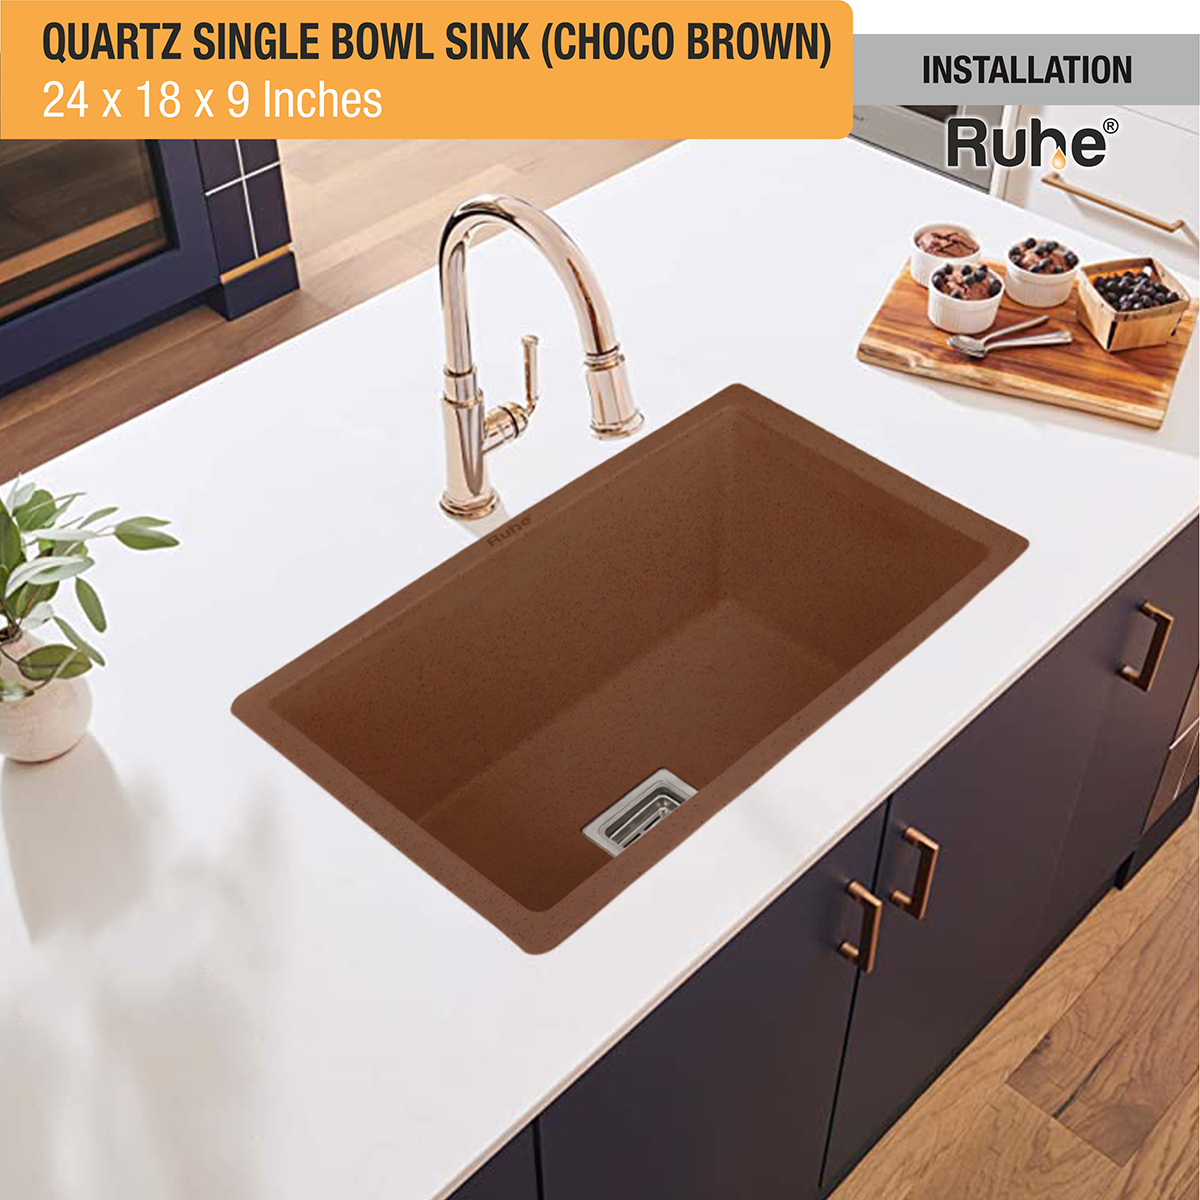 Quartz Single Bowl Choco Brown Kitchen Sink (24 x 18 x 9 inches) installed